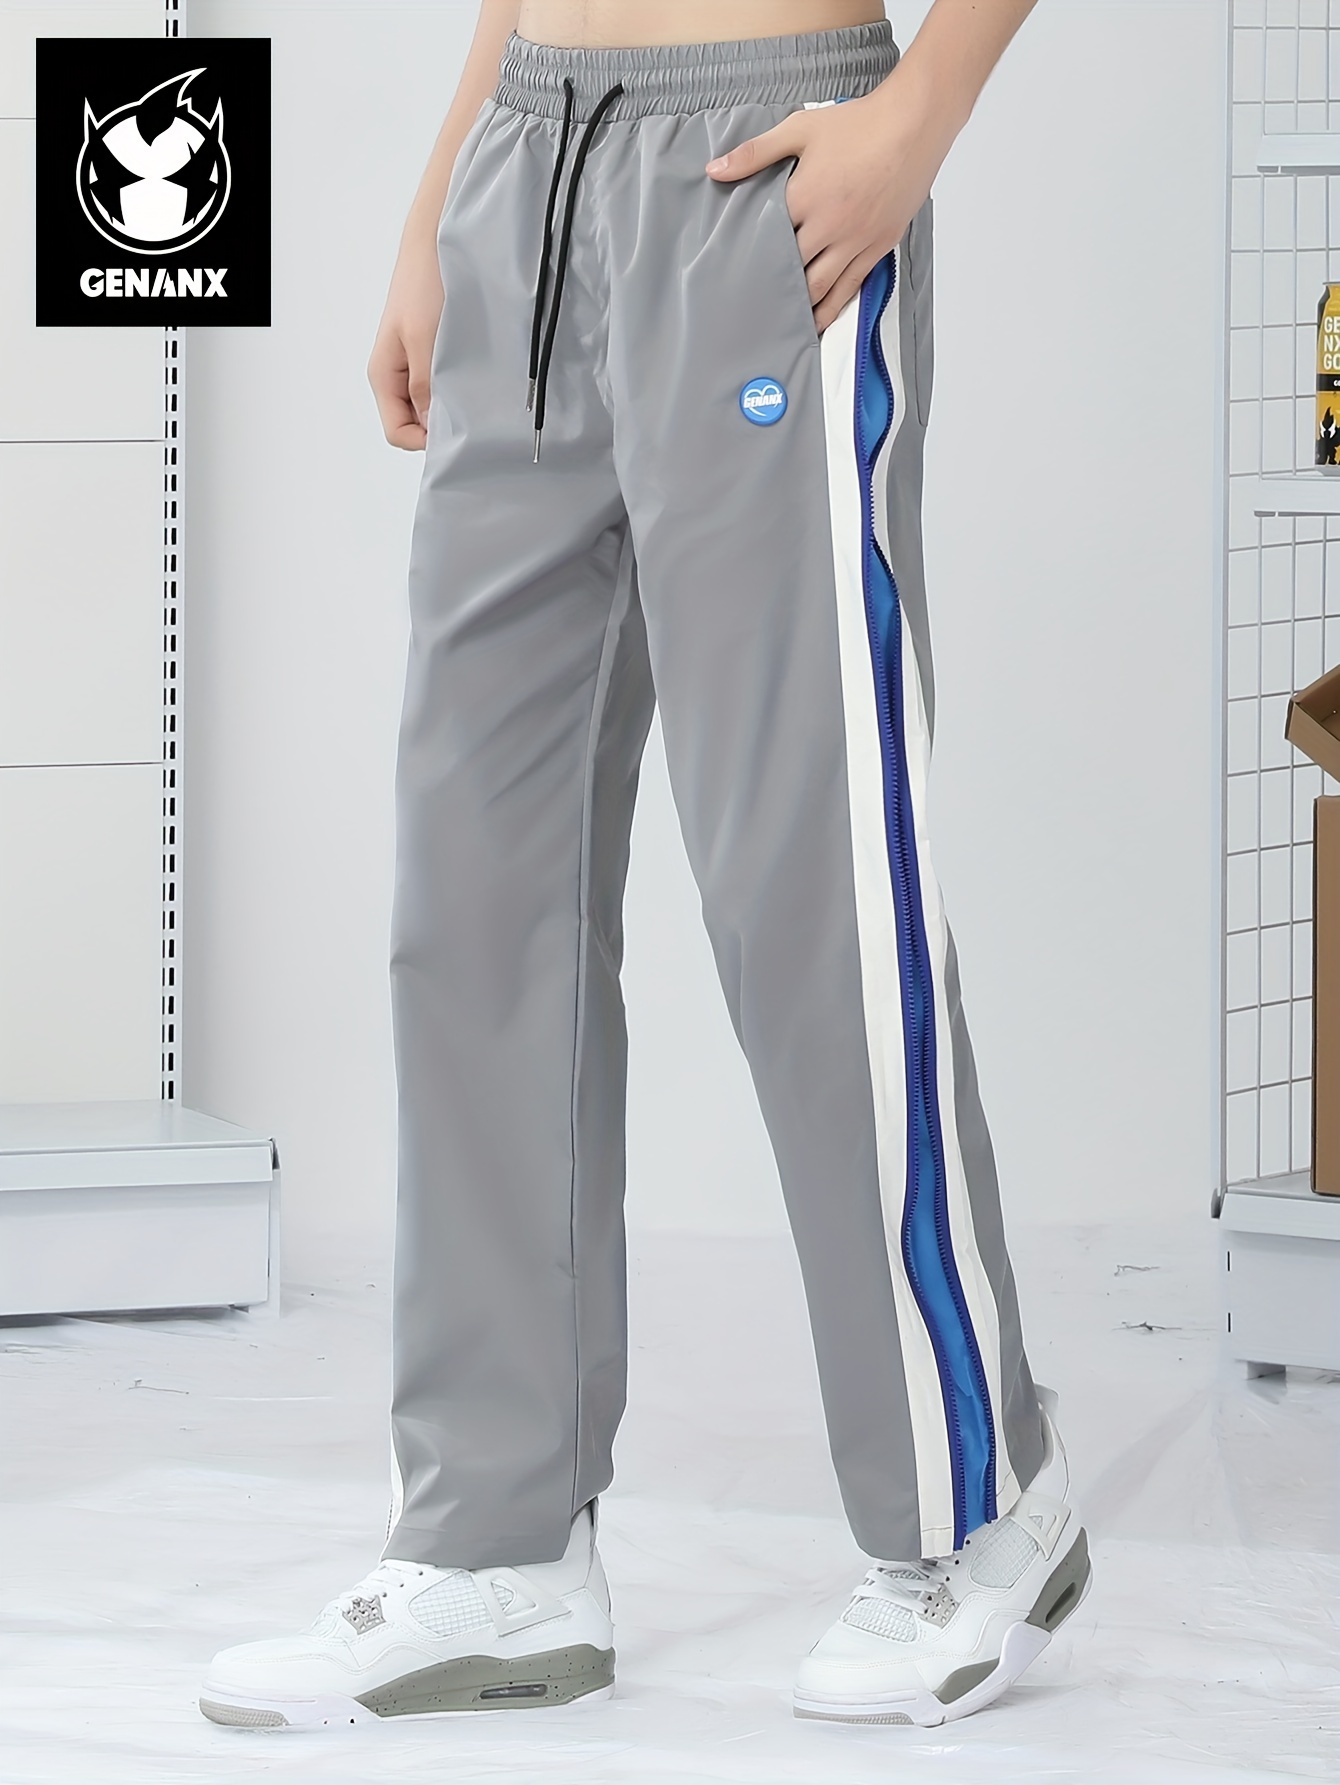 Fashion Mens Summer Fashion New Stripe Slim Pants Casual Loose